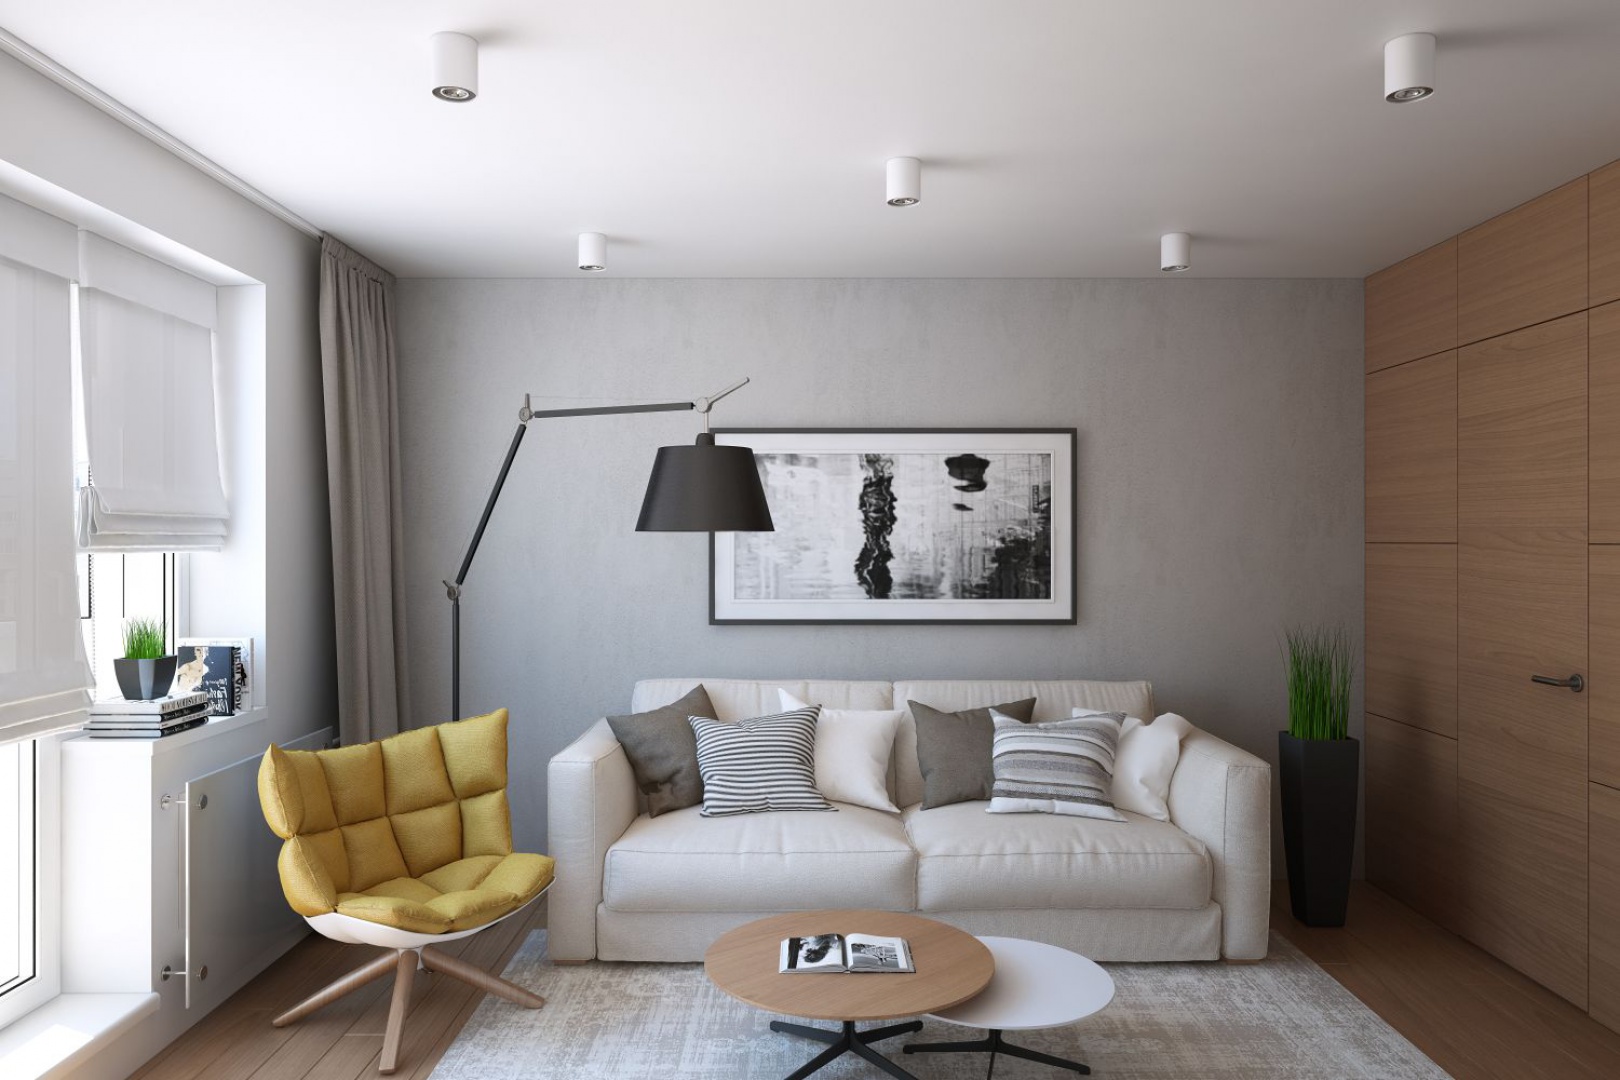 Ścianę bezpośrednio za sofą wykończono tynkiem z efektem betonu, który wprowadza delikatnie surowszy klimat do wnętrza. Z fakturą betonu pięknie kontrastuje fornir na prostopadłej ścianie. Projekt i wizualizacje: Geometrium Design Studio.